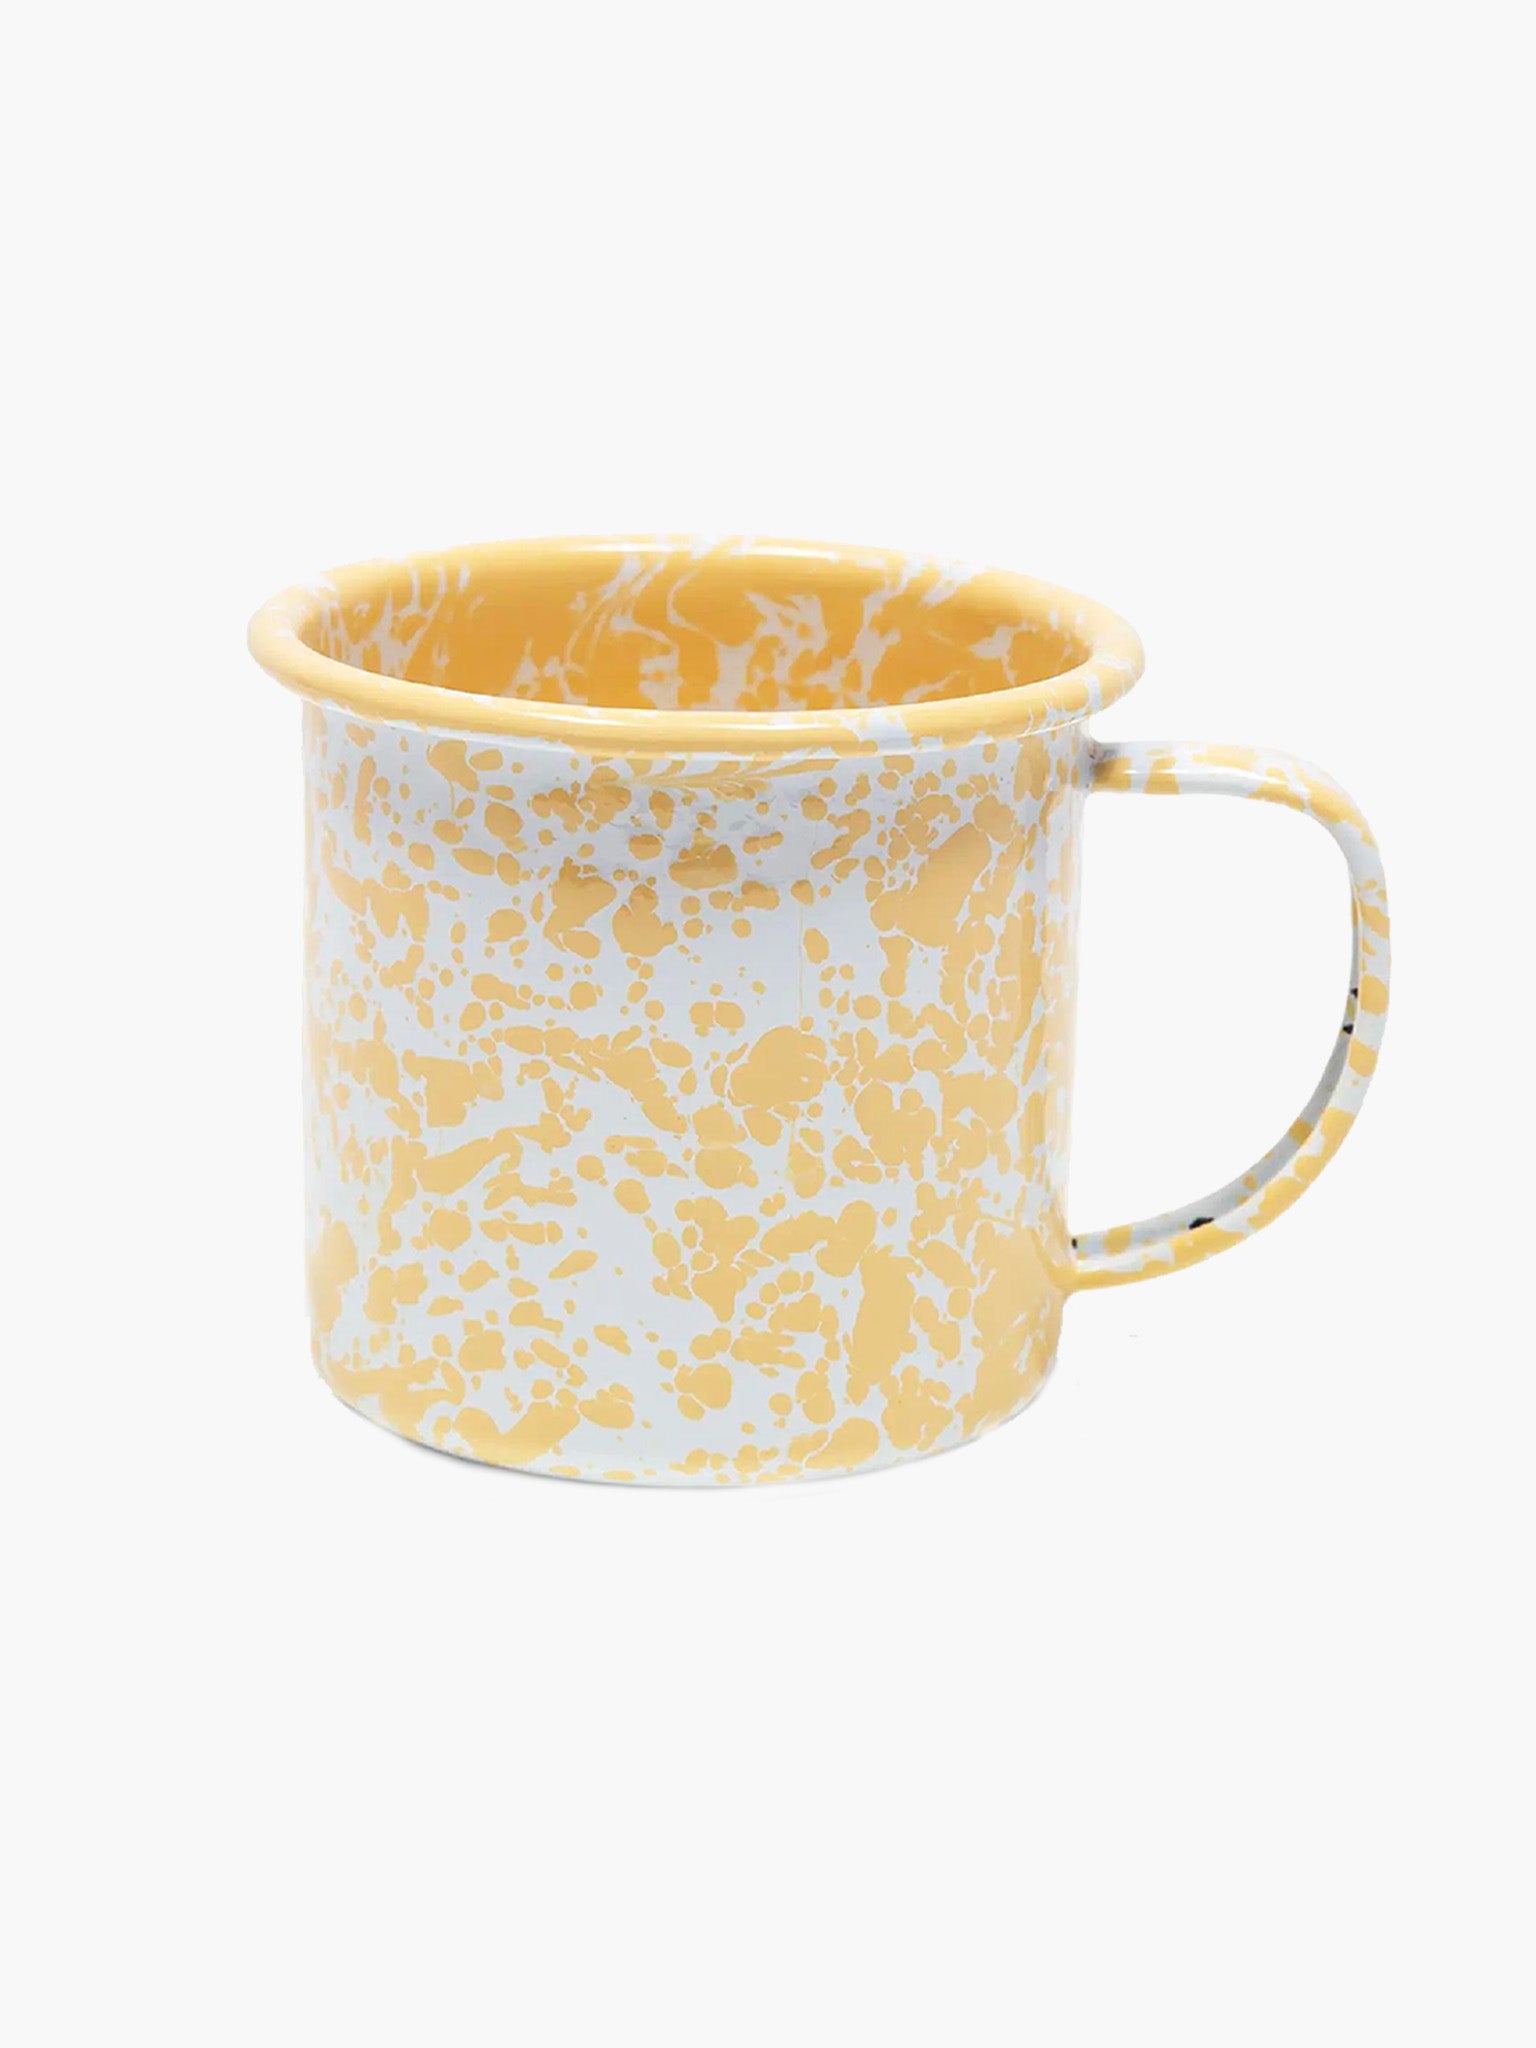 Splatter Mug (350ml) - Yellow